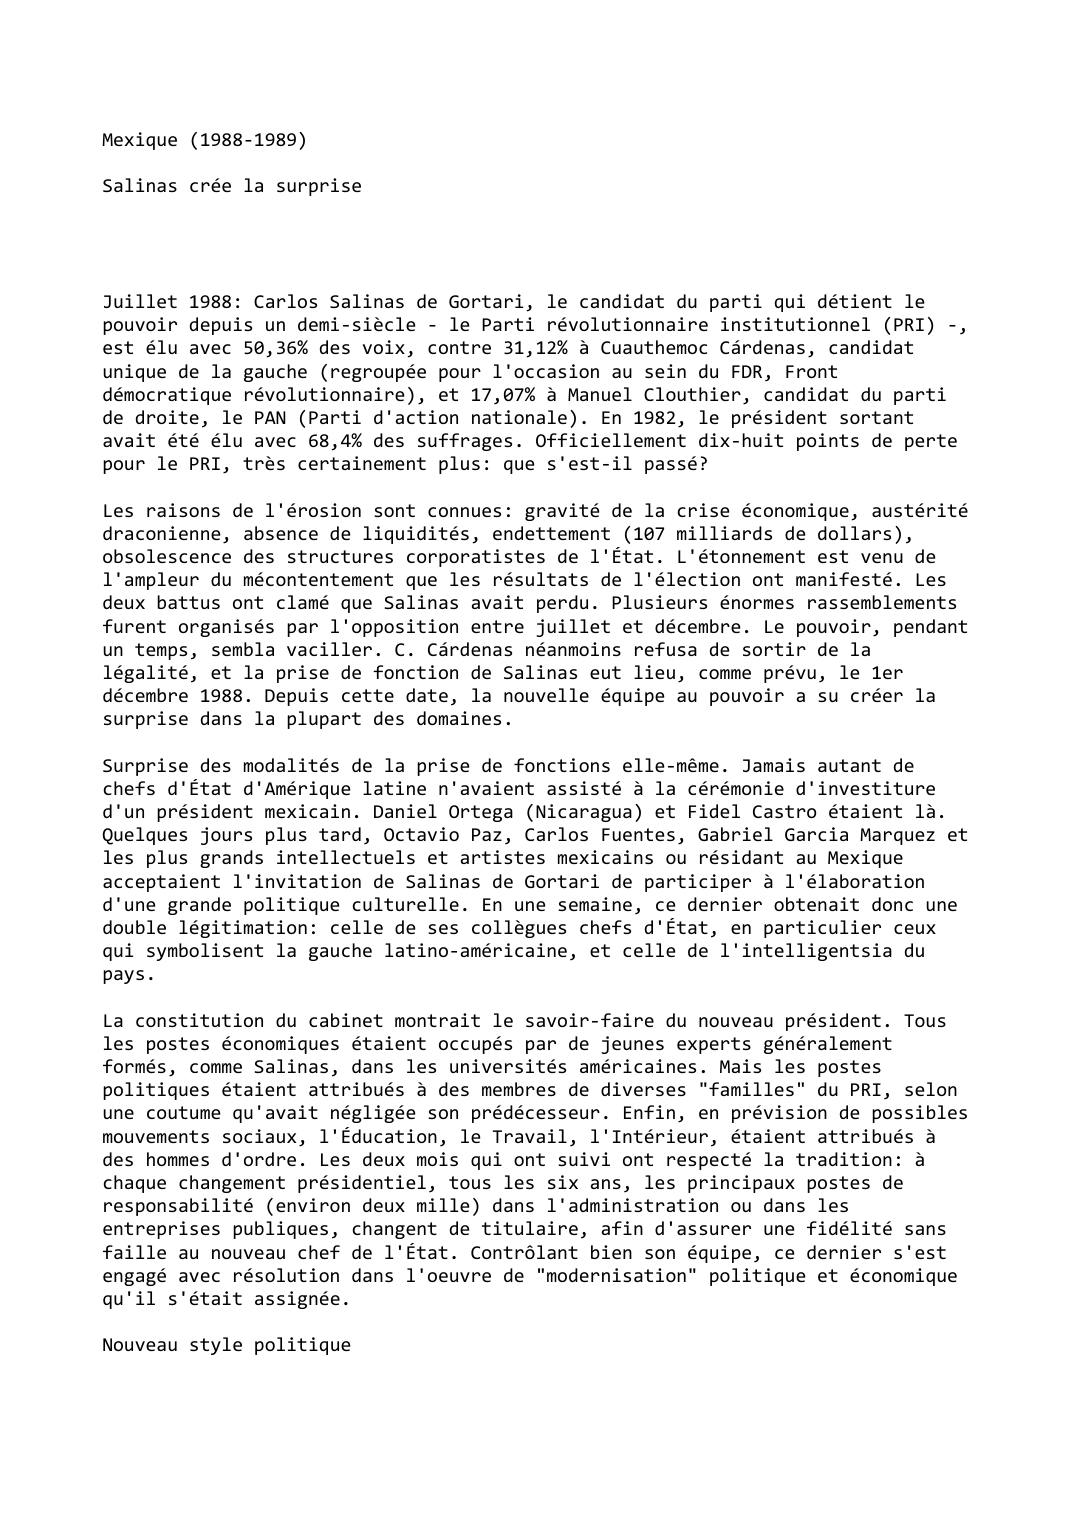 Prévisualisation du document Mexique (1988-1989)

Salinas crée la surprise